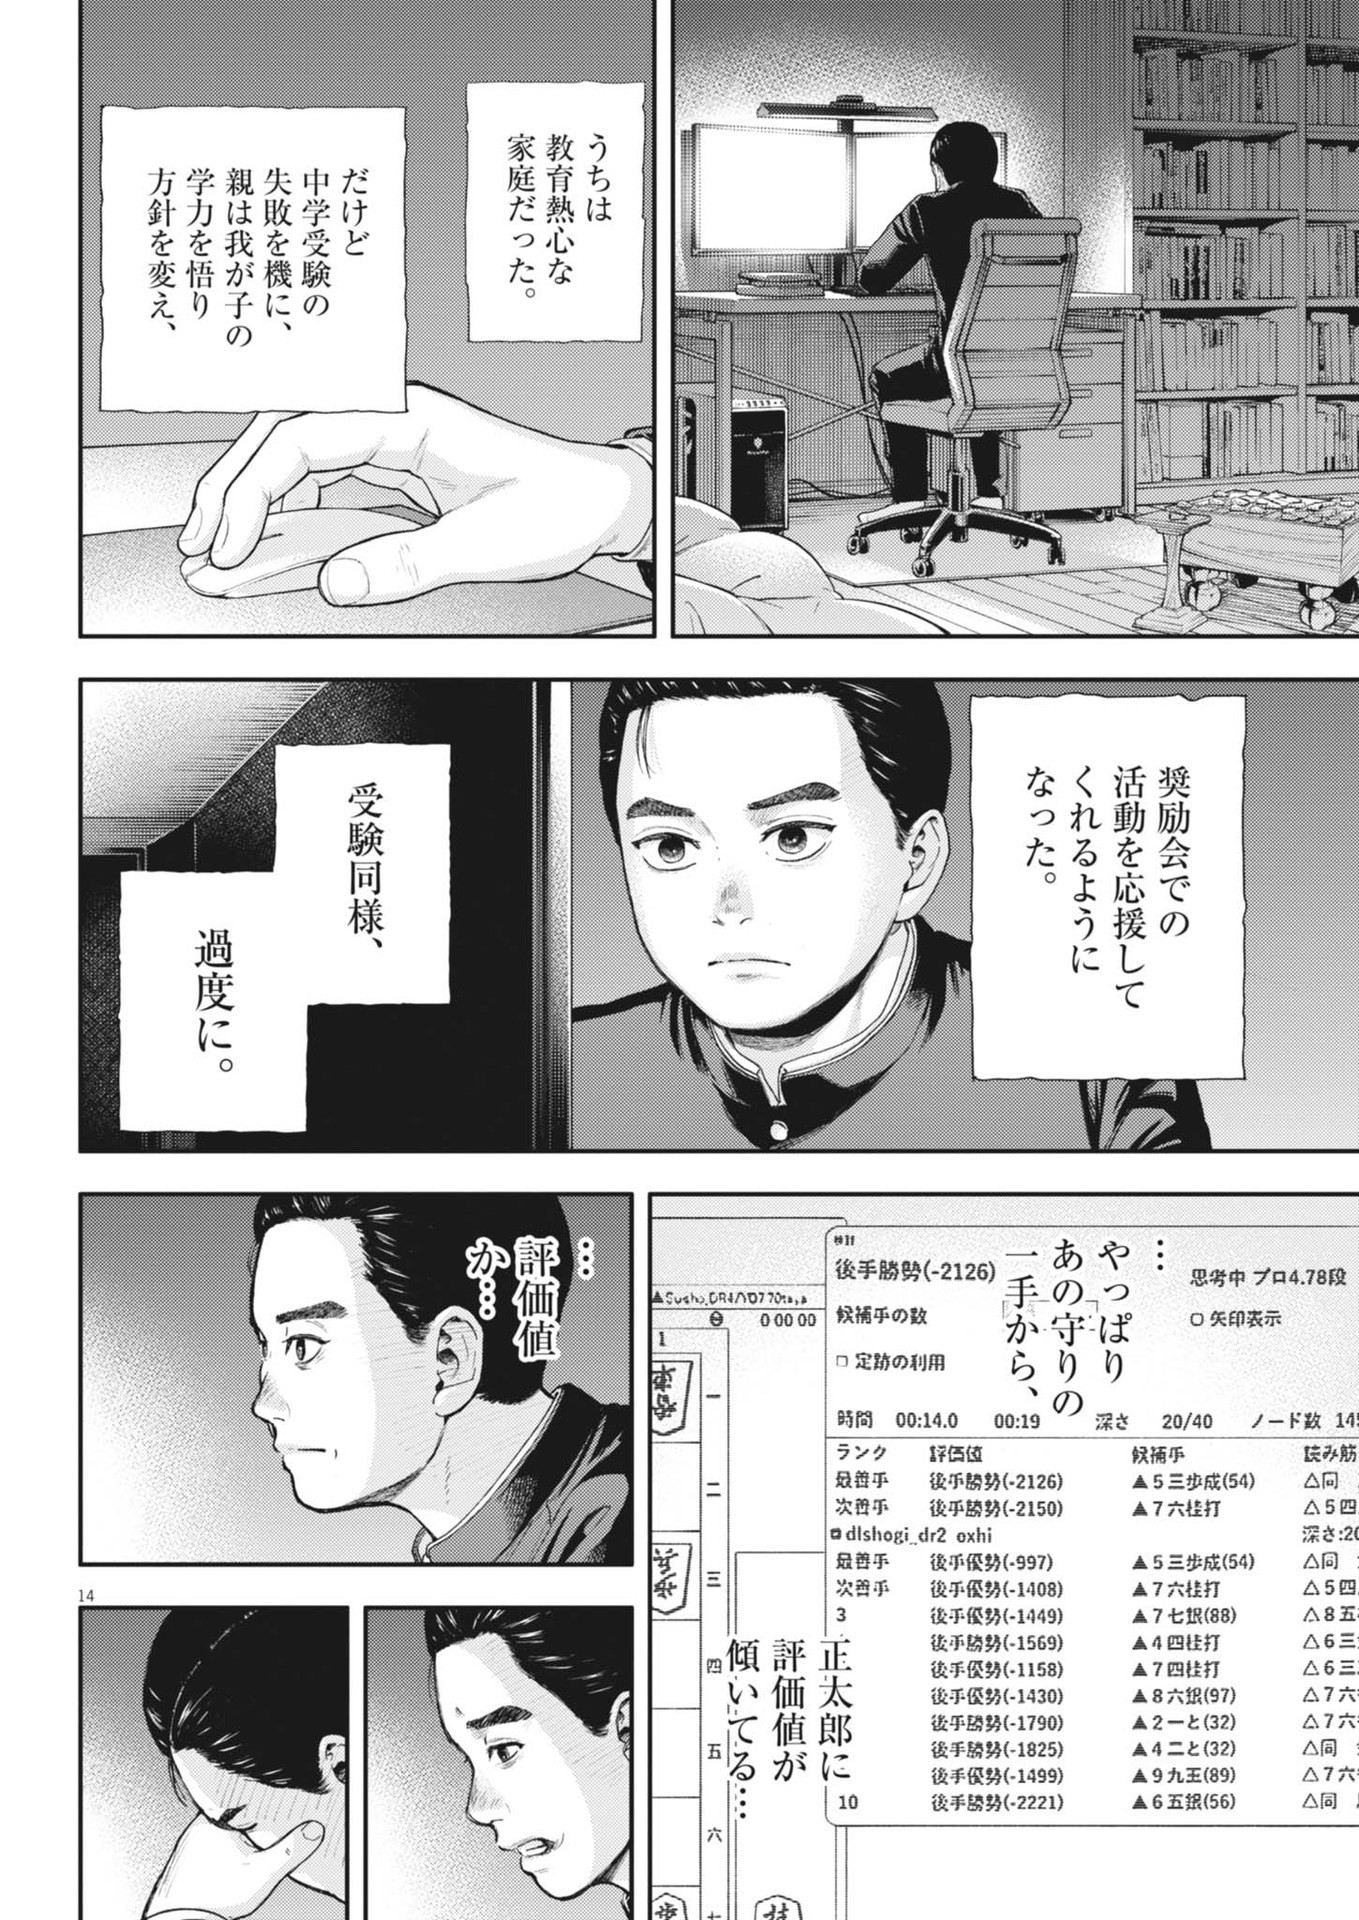 Yumenashi-sensei no Shinroshidou - Chapter 33 - Page 14